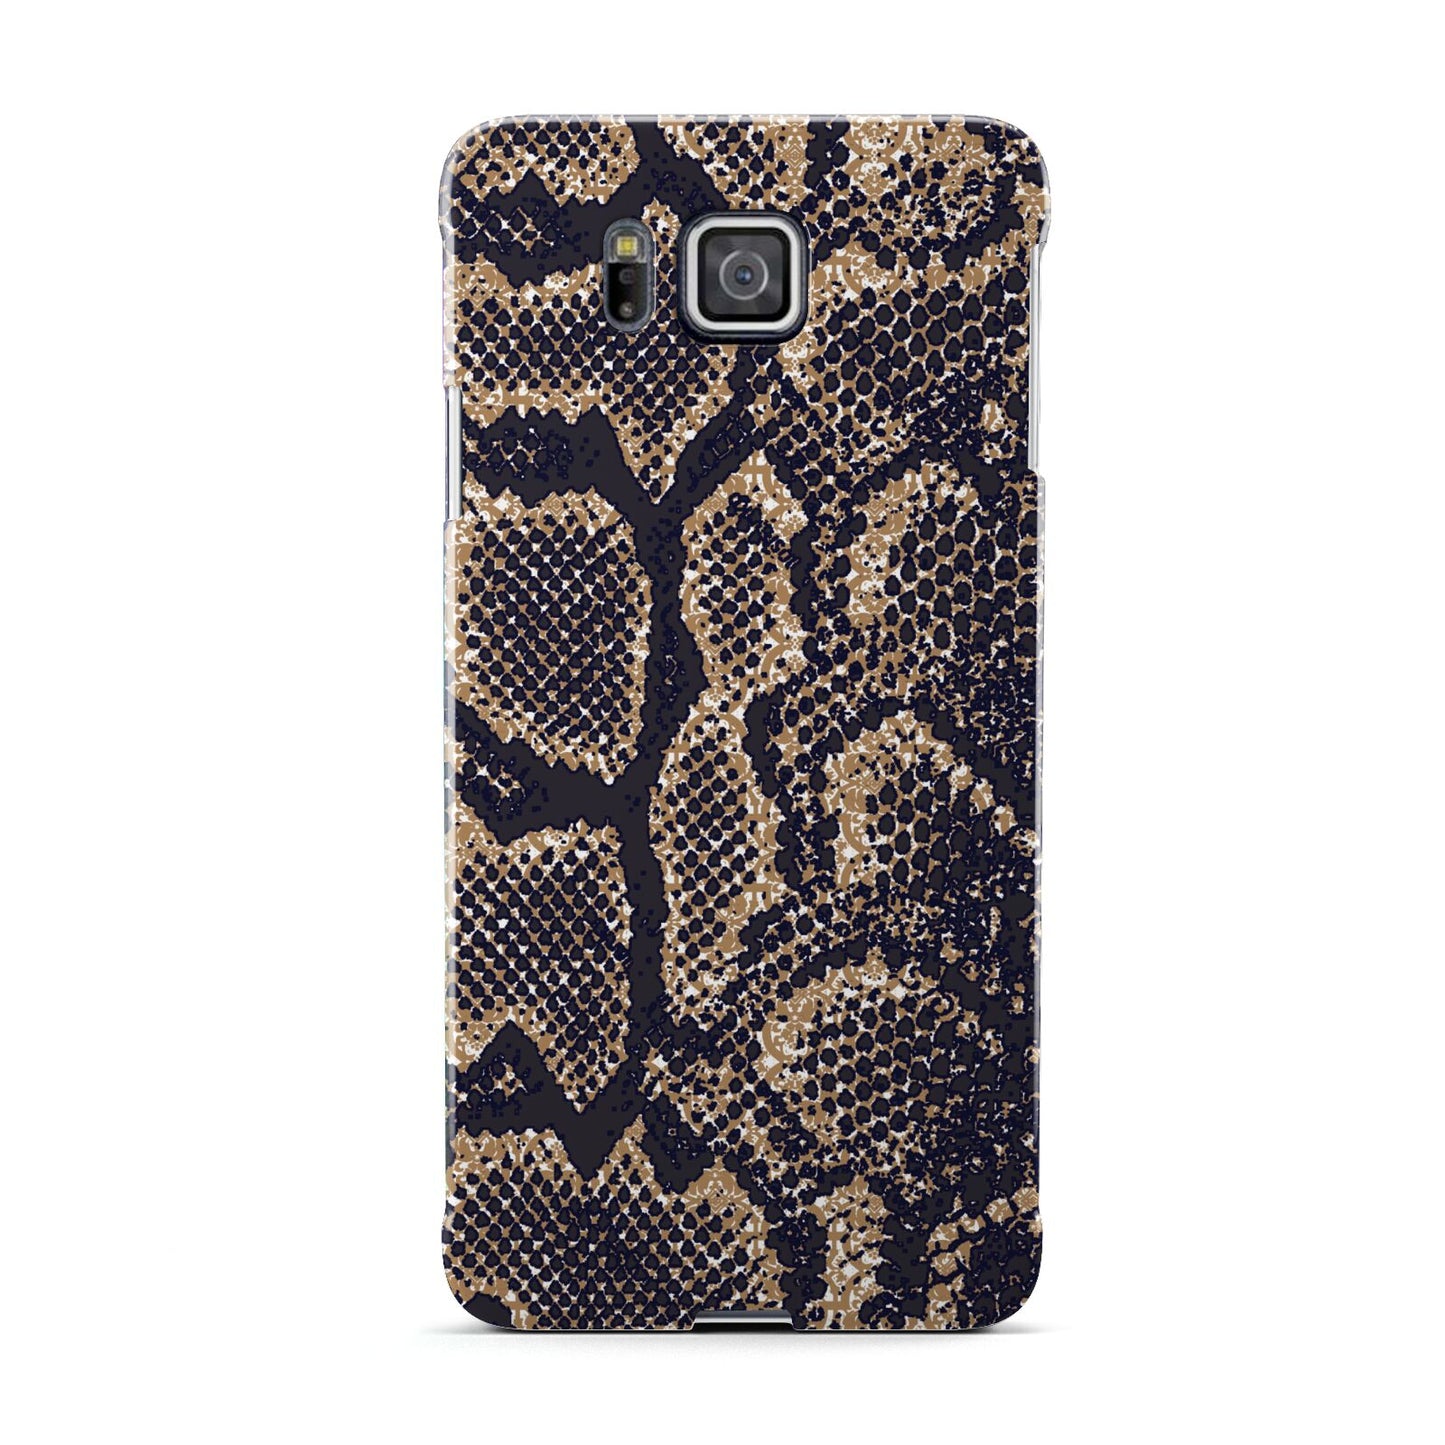 Brown Snakeskin Samsung Galaxy Alpha Case